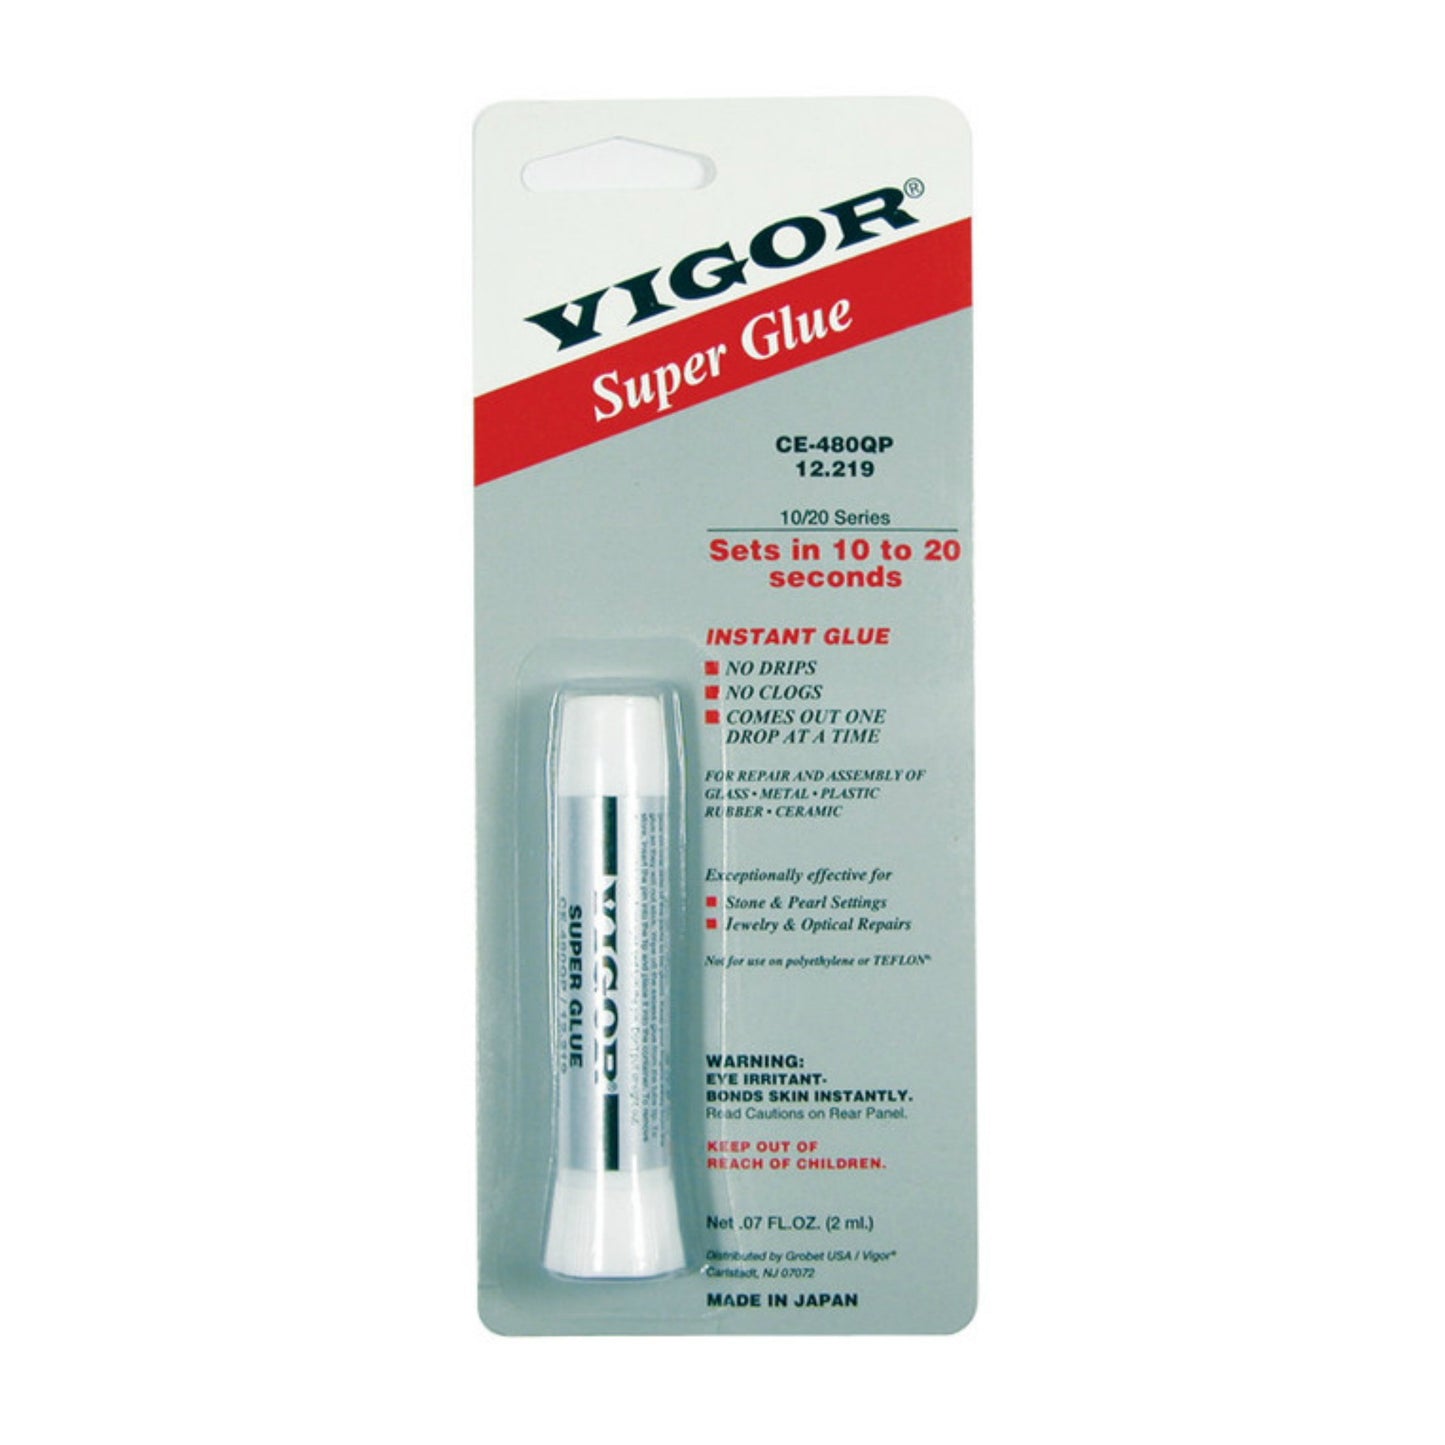 Vigor® Super Glue 10/20